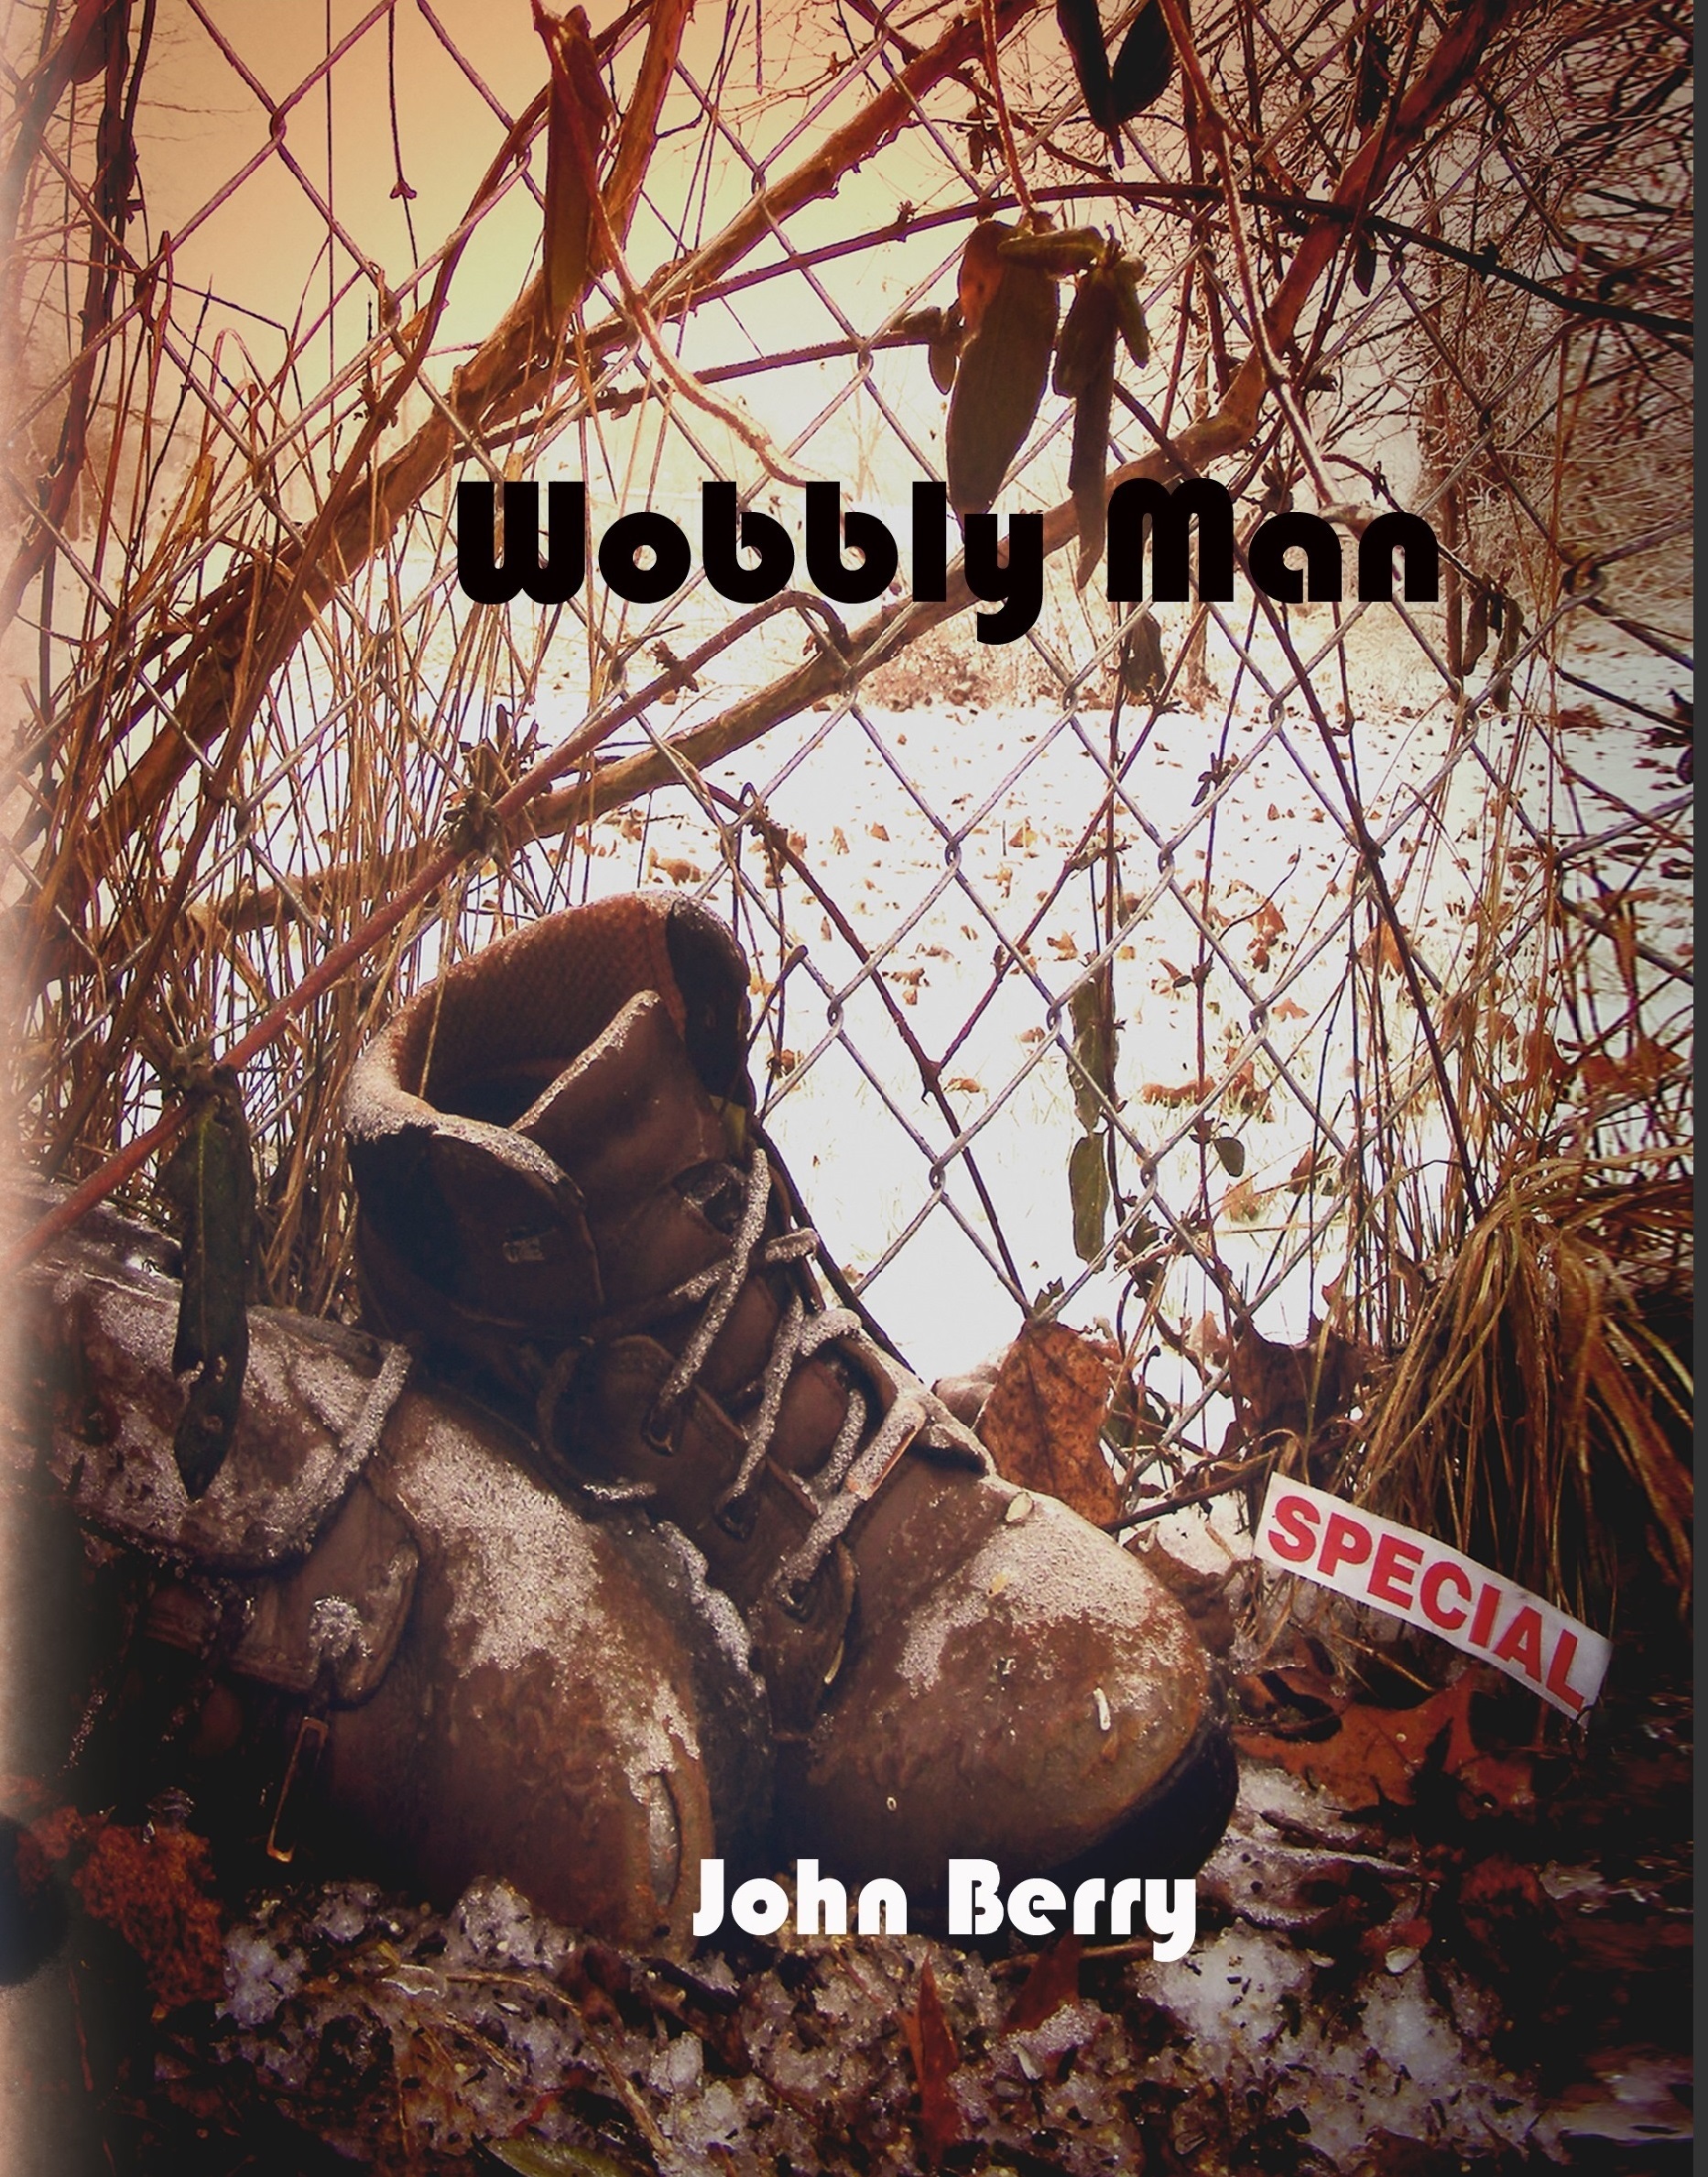 Wobbly Man